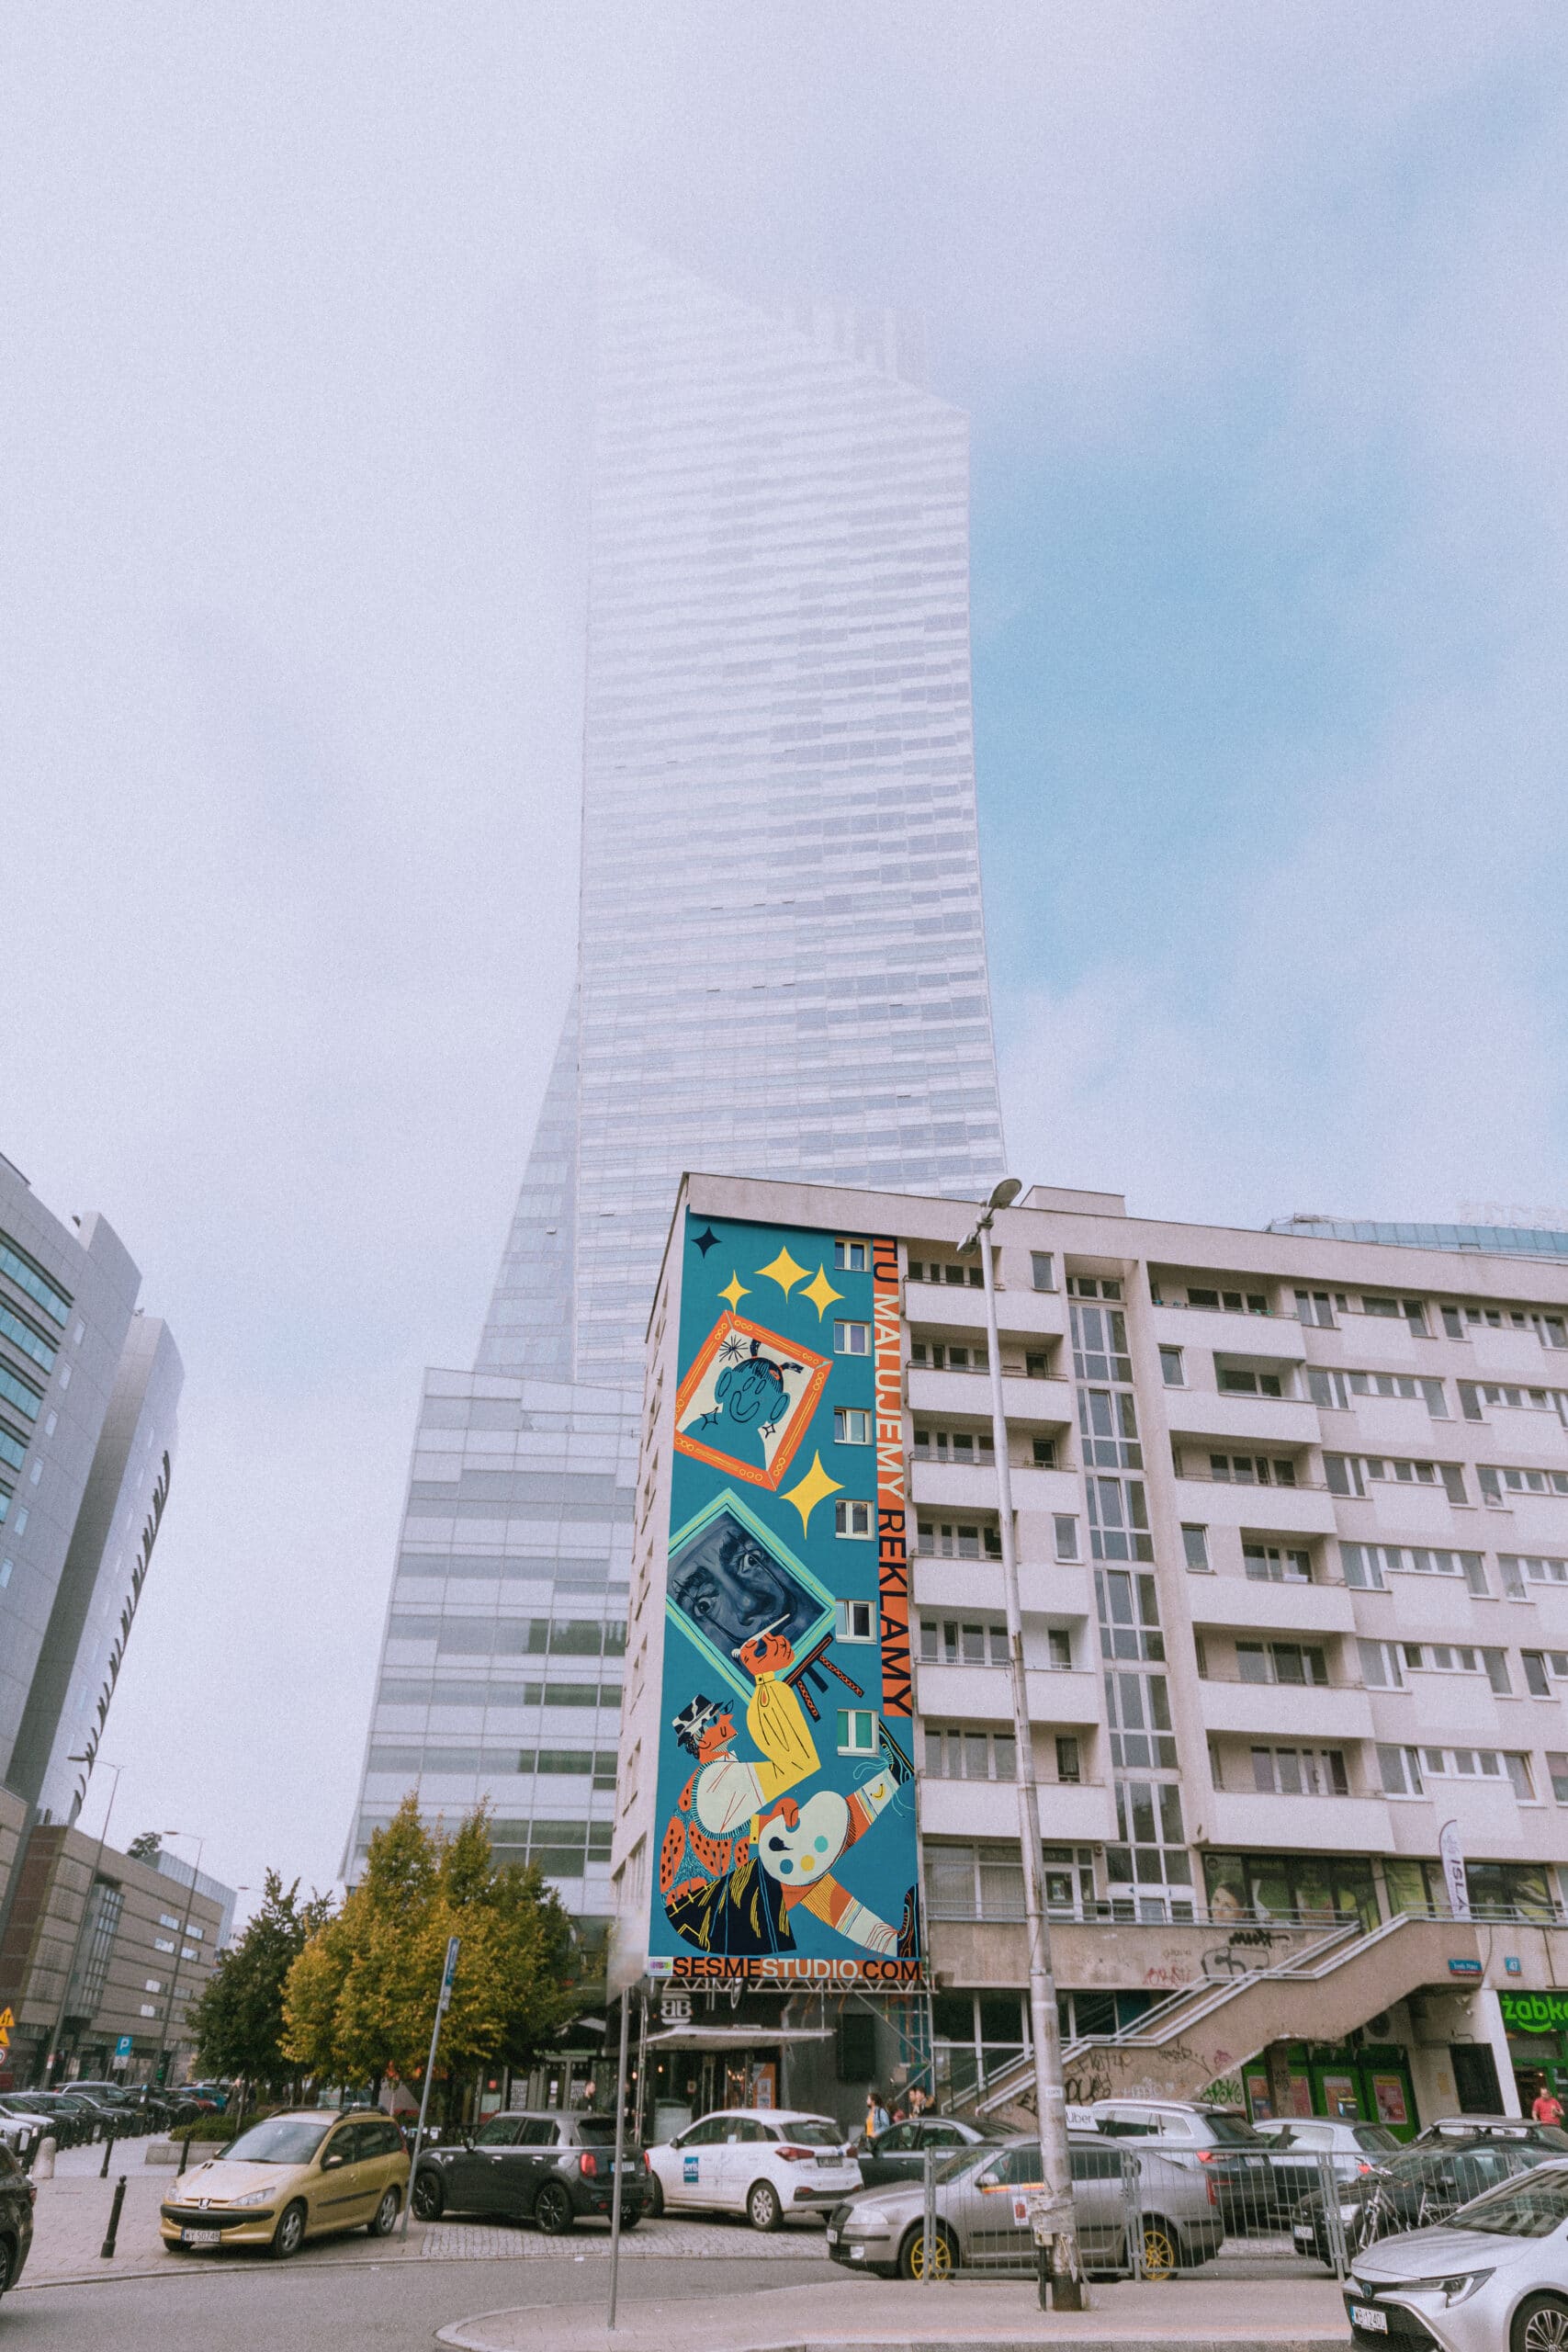 mural reklamowy studia kreatywnego w centrum Warszawy